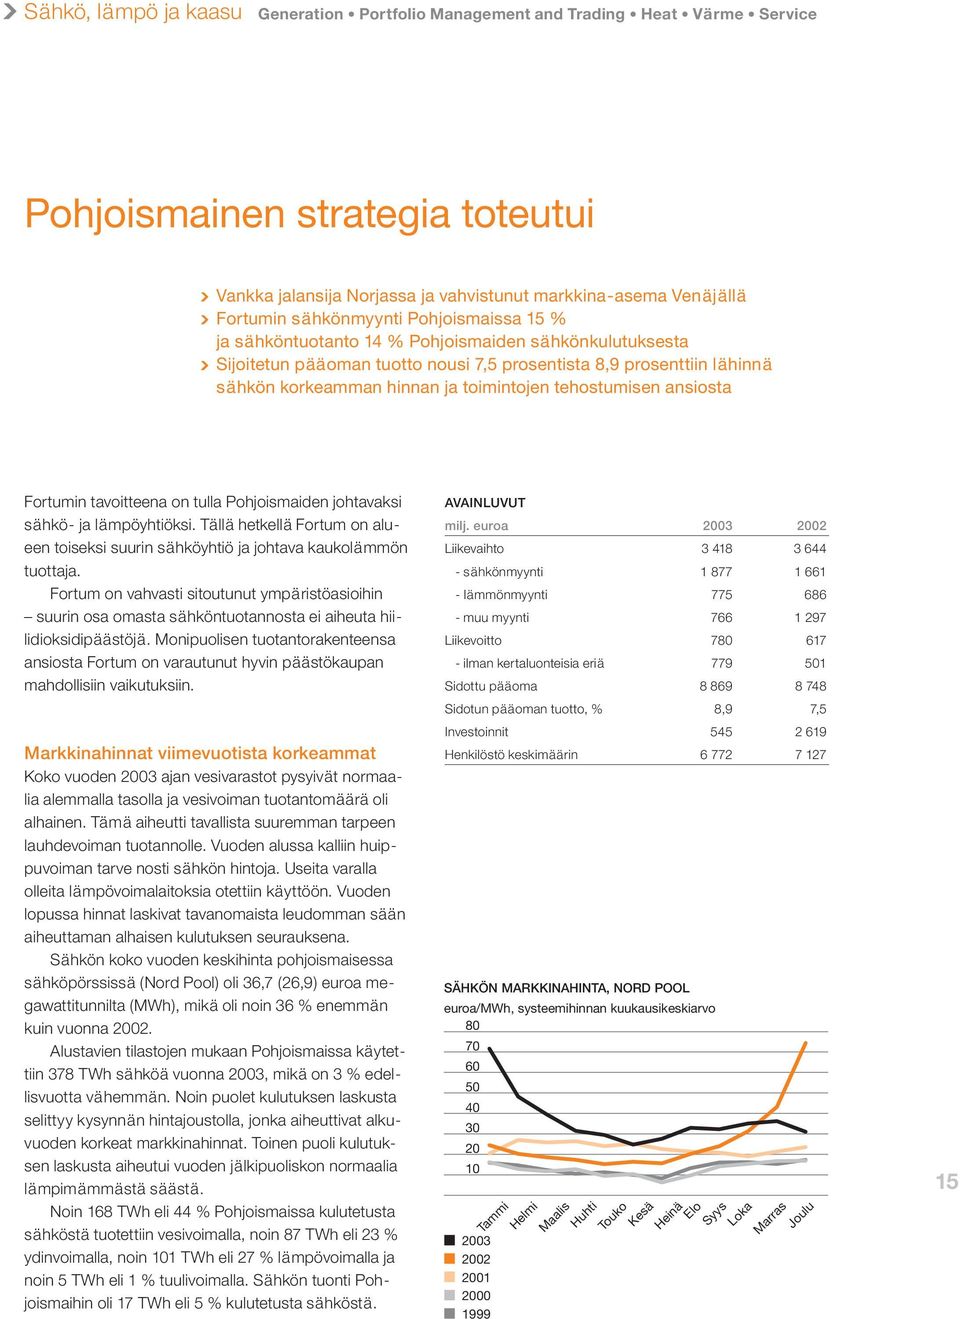 tehostumisen ansiosta Fortumin tavoitteena on tulla Pohjoismaiden johtavaksi sähkö- ja lämpöyhtiöksi. Tällä hetkellä Fortum on alueen toiseksi suurin sähköyhtiö ja johtava kaukolämmön tuottaja.